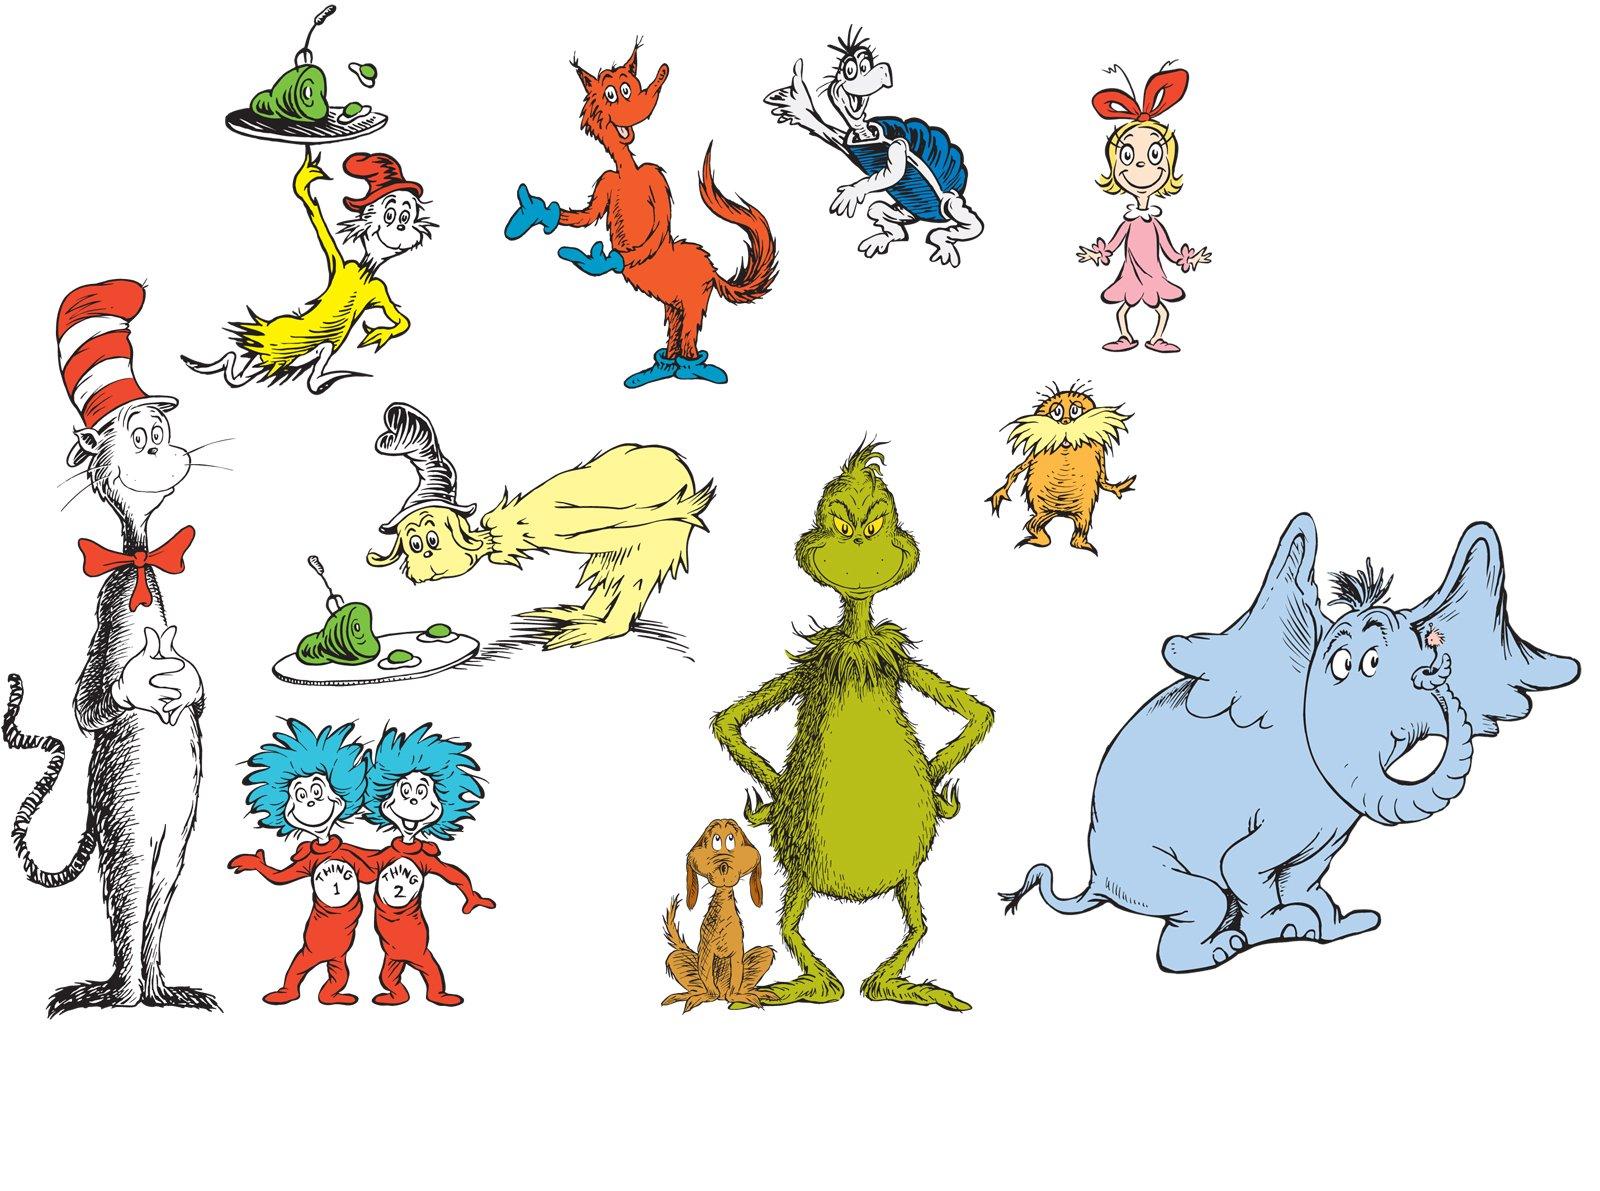 Η δημοσίευση έξι βιβλίων του Dr. Seuss θα σταματήσει λόγω ρατσιστικών εικόνων